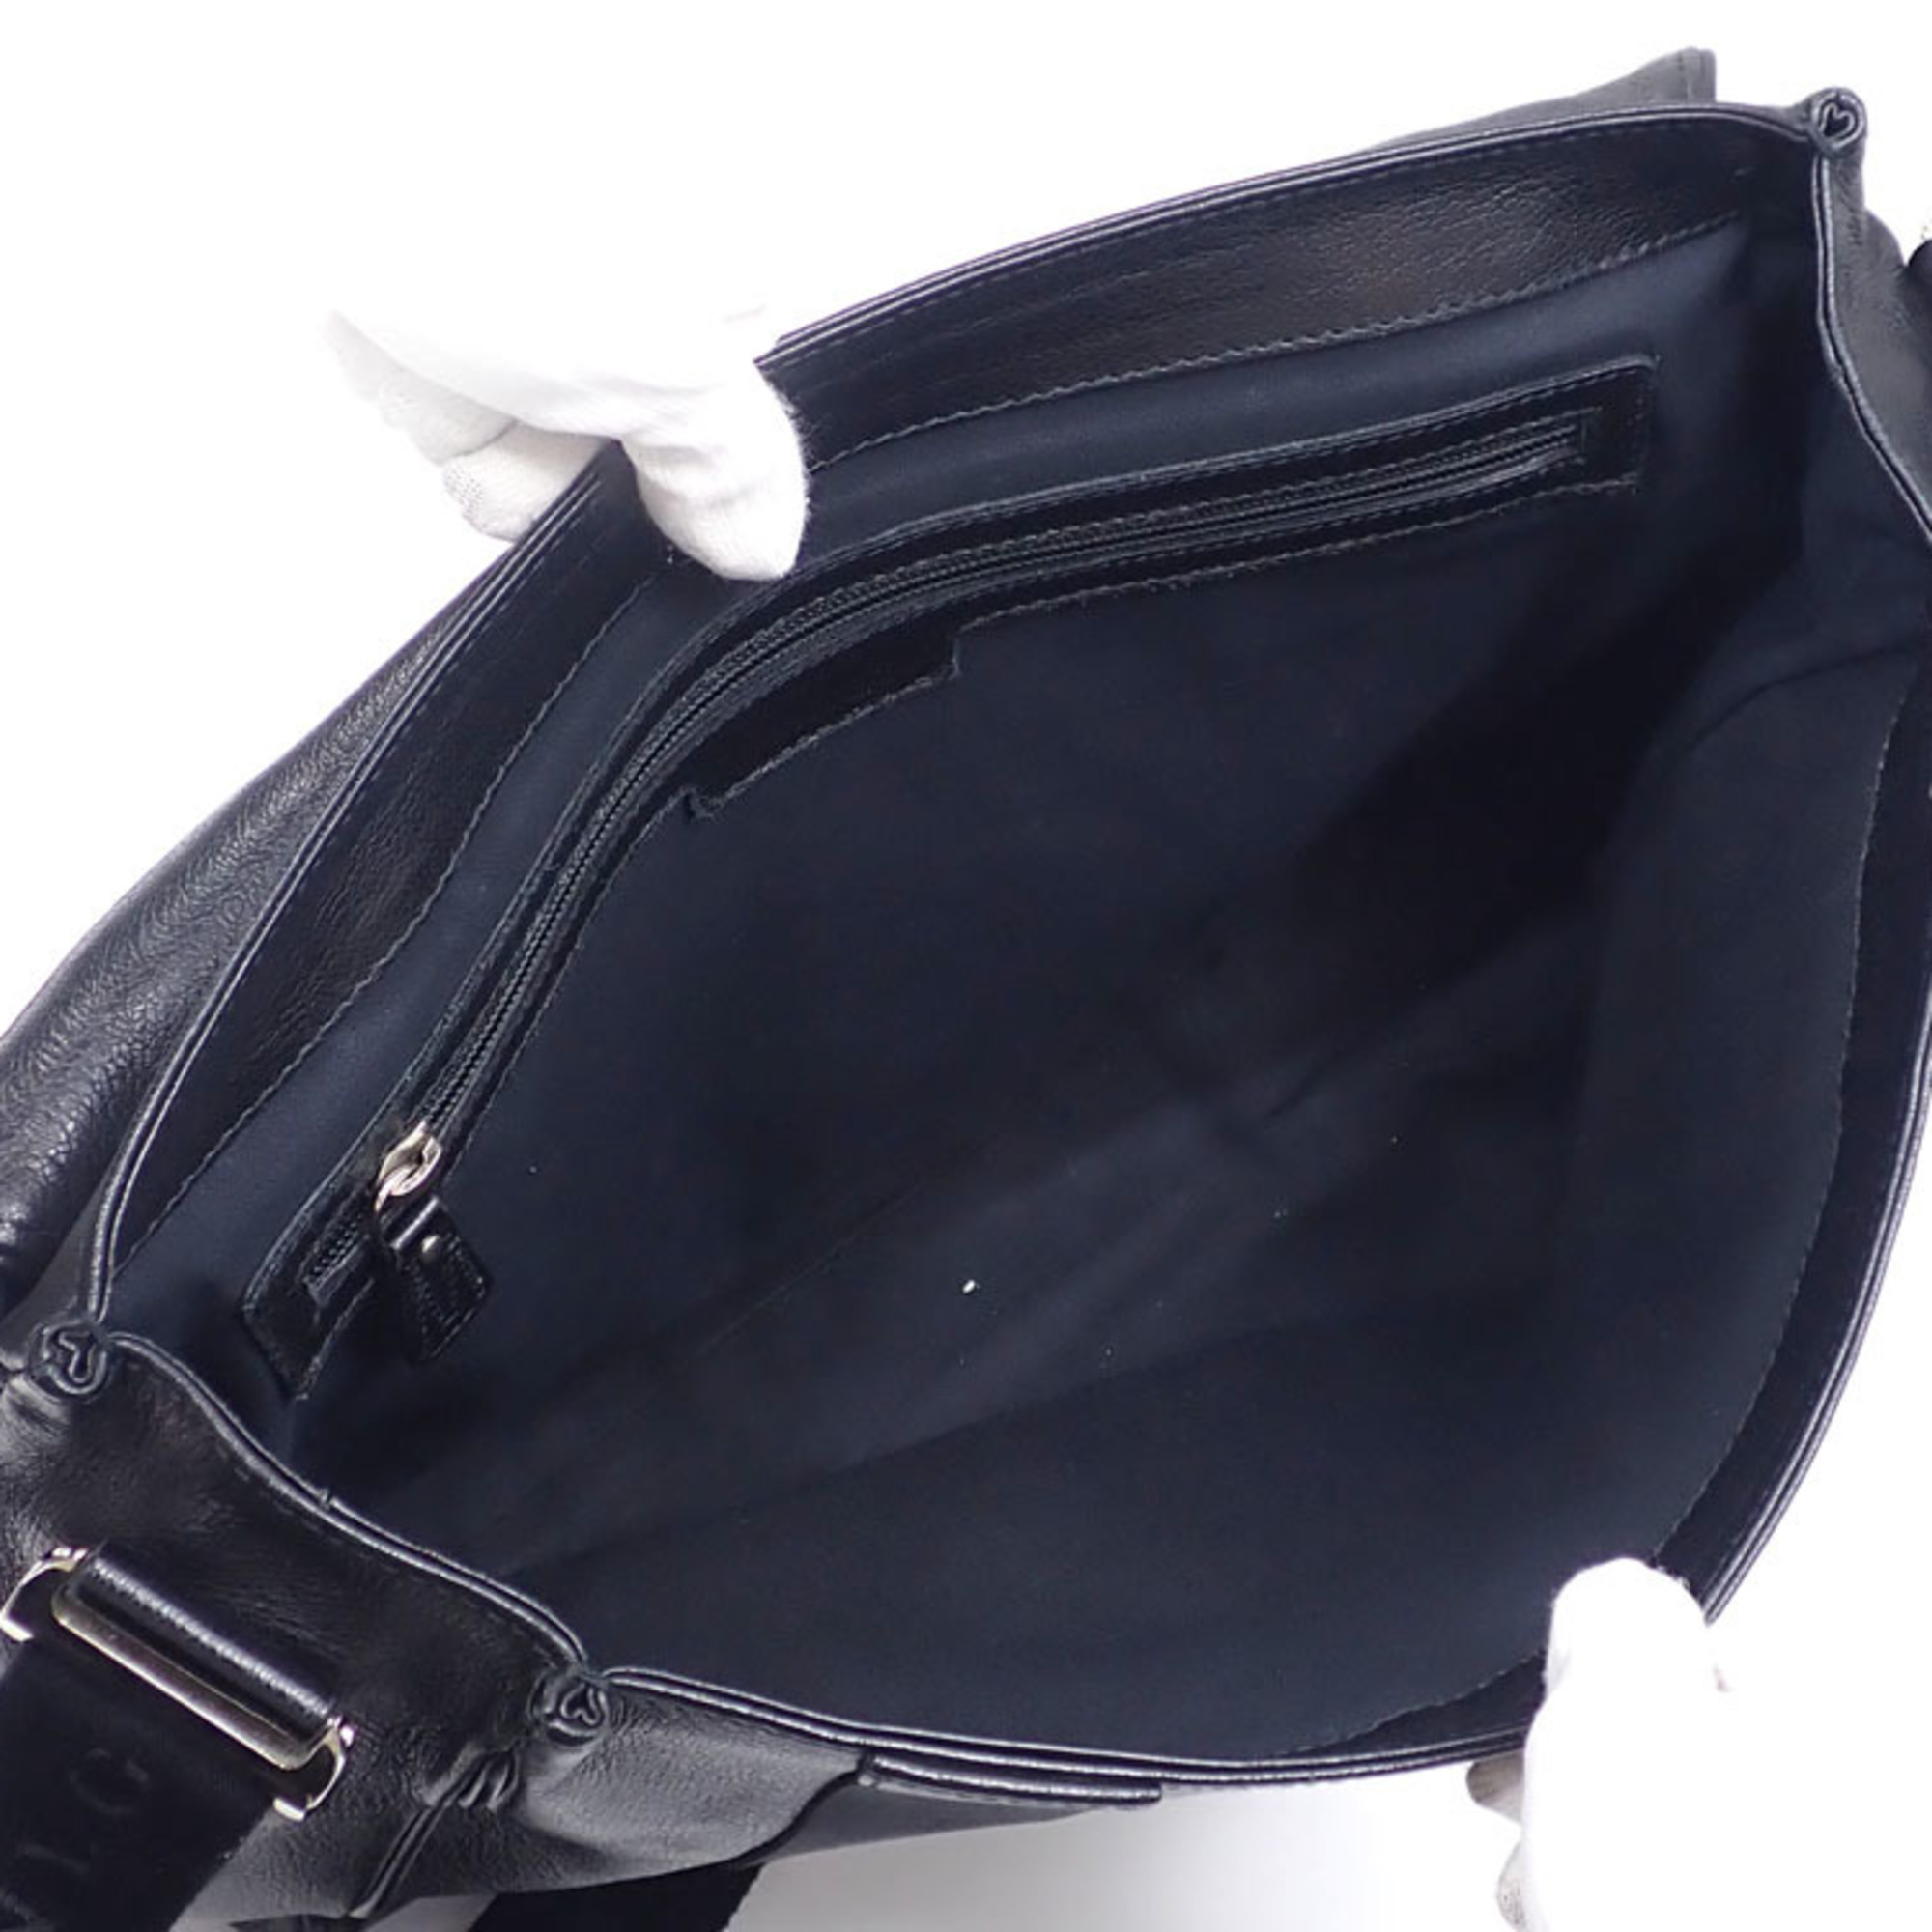 Bvlgari Bulgari shoulder bag for men in black leather